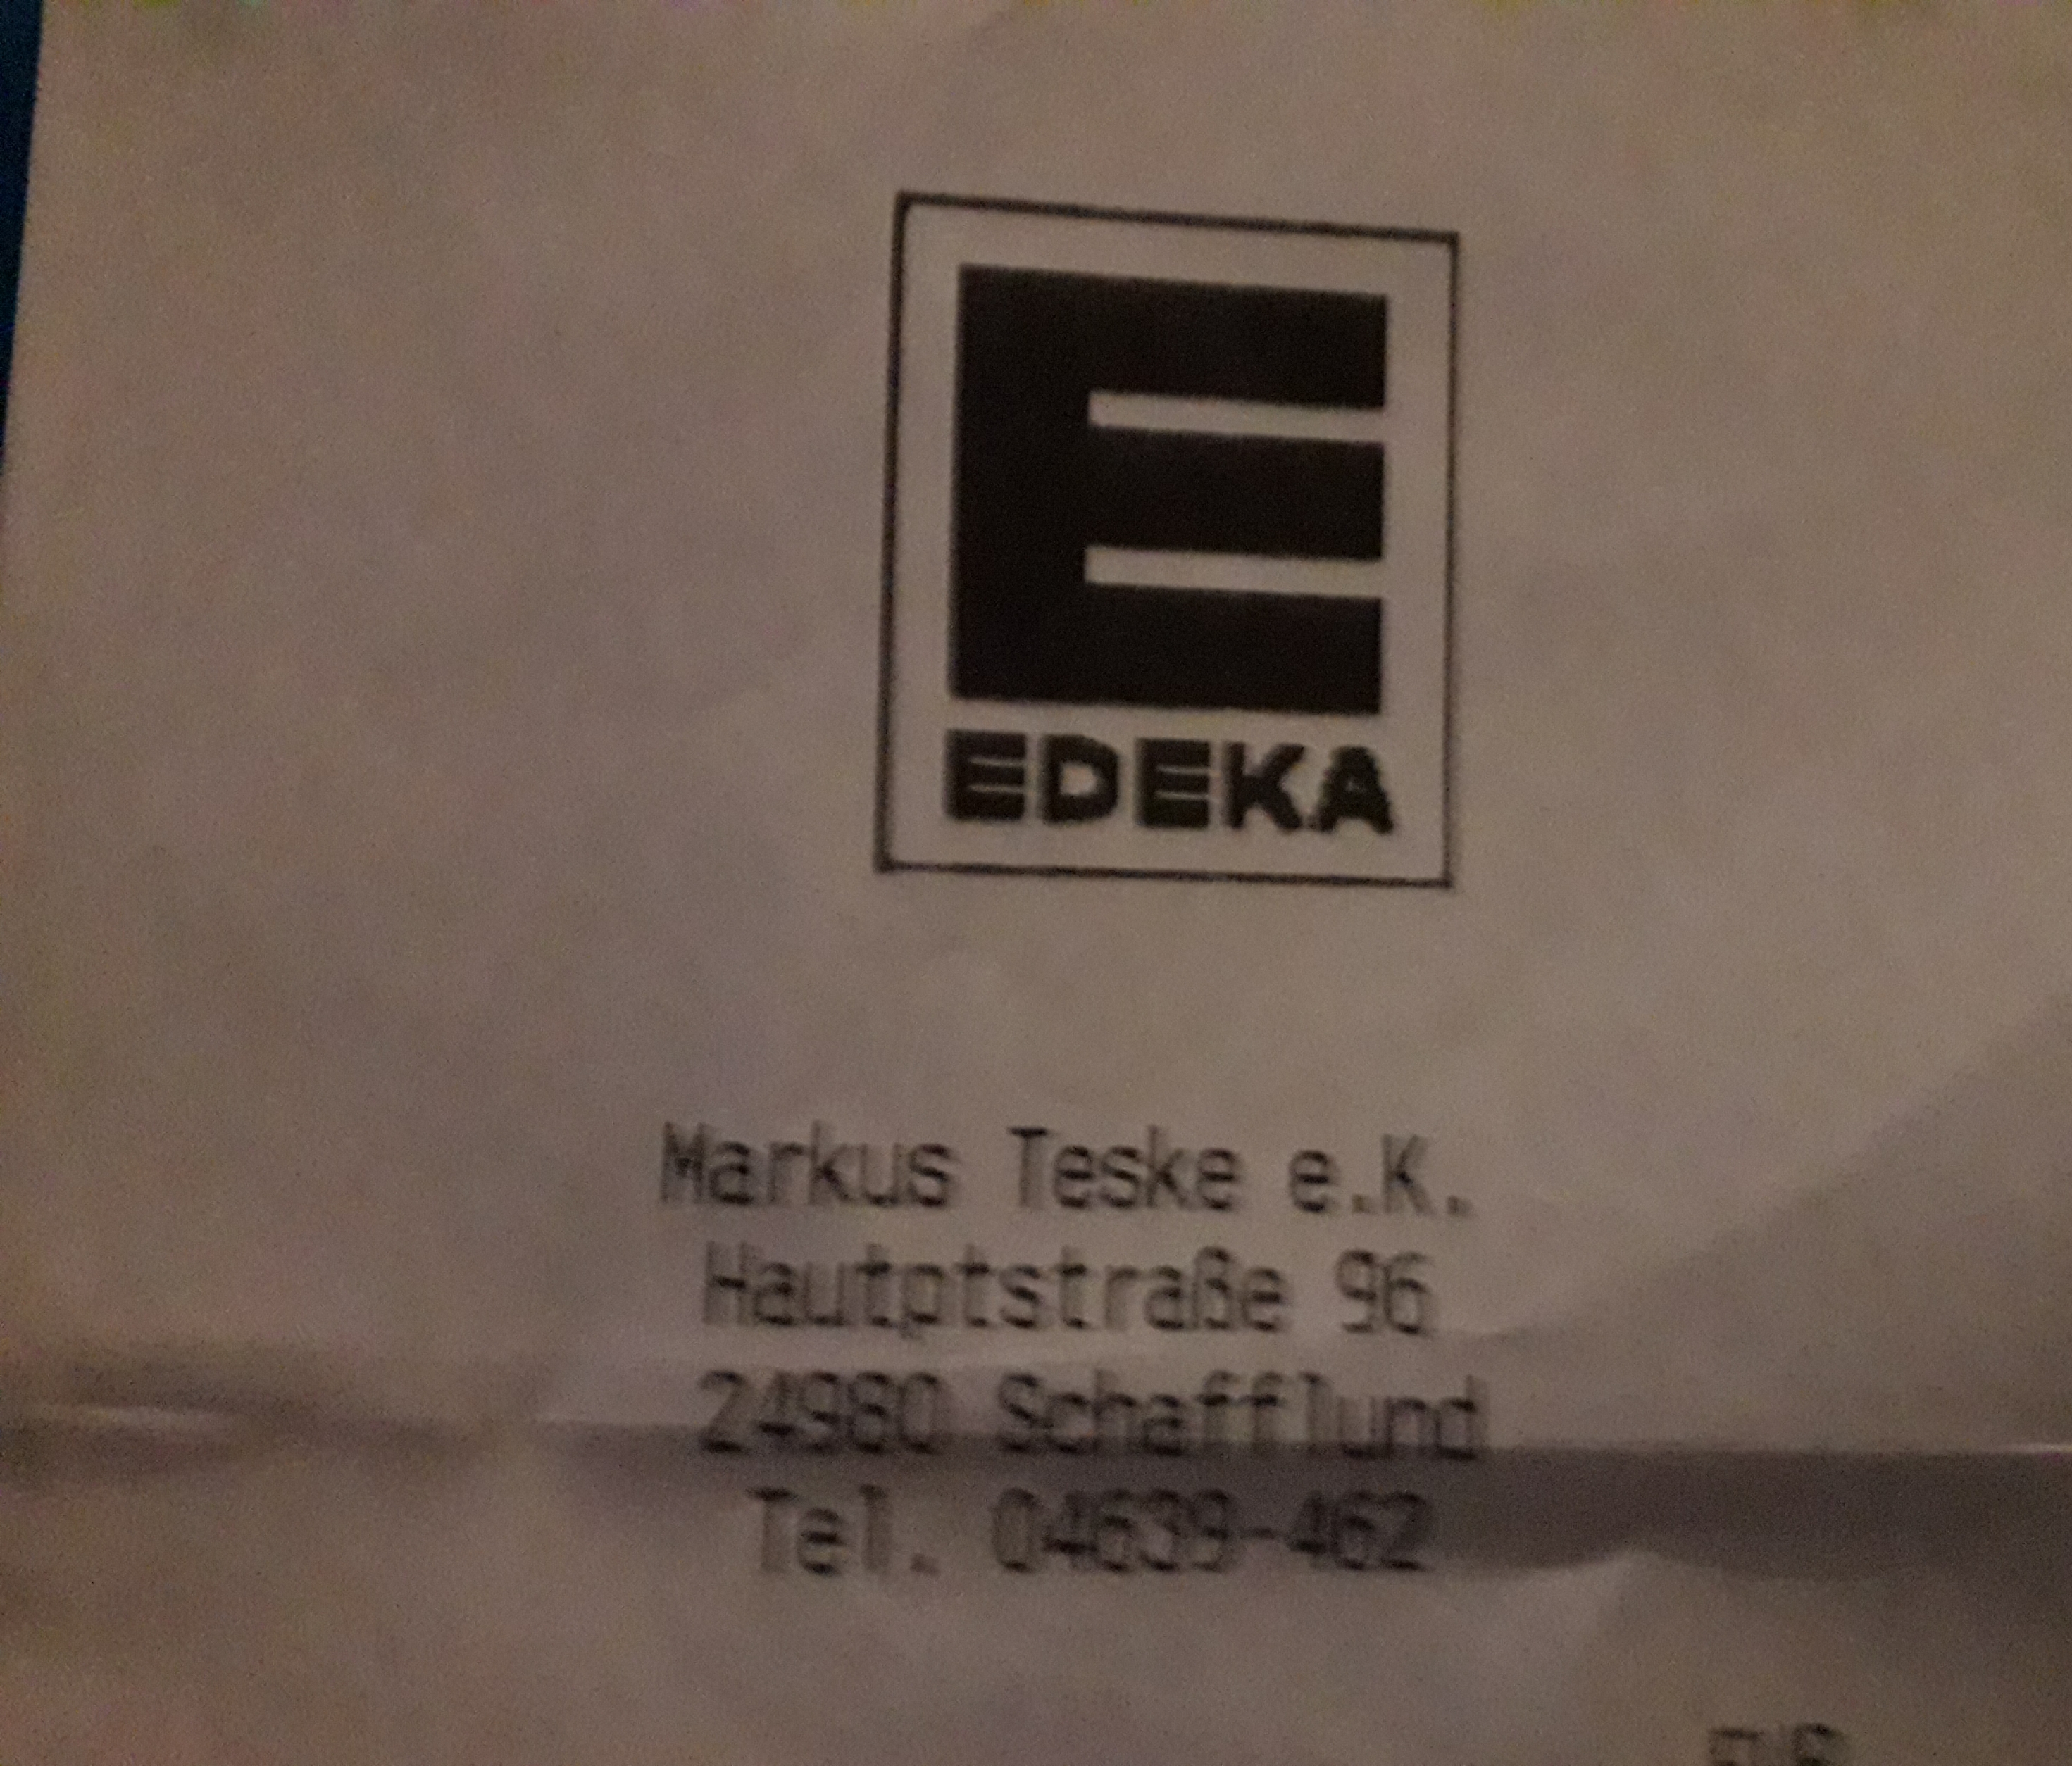 Bild 1 Edeka Markt M. Teske e.K. in Schafflund